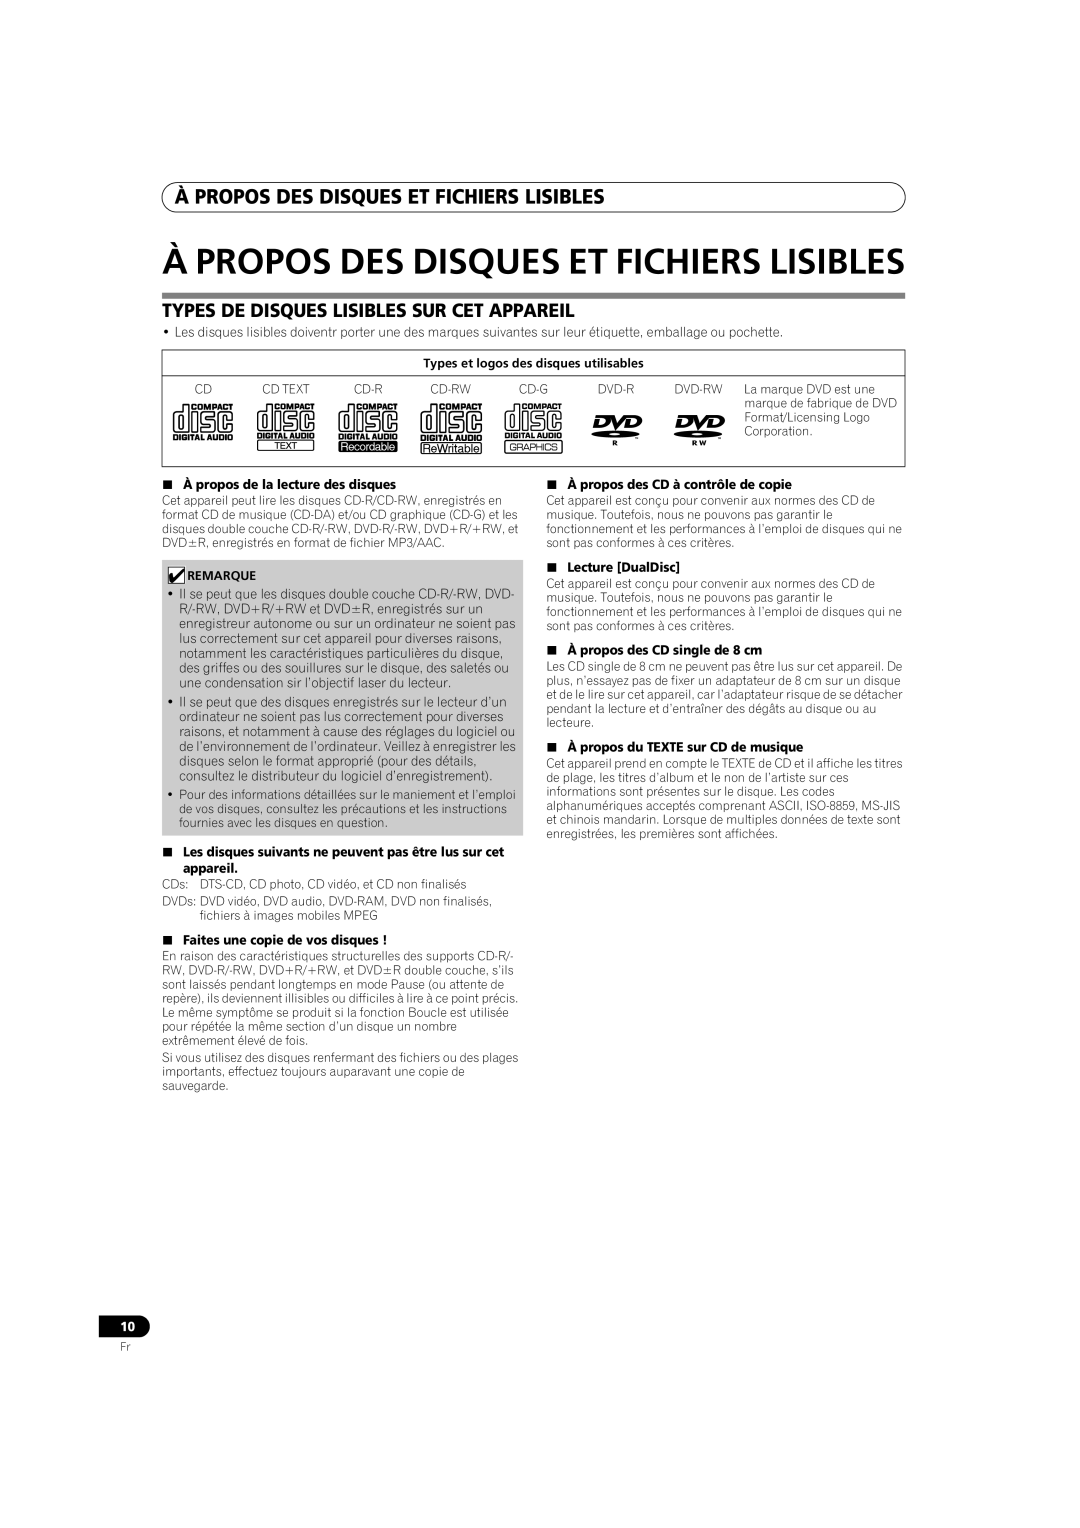 Pioneer MEP-7000 Àpropos Des Disques Et Fichiers Lisibles, Types De Disques Lisibles Sur Cet Appareil, appareil 